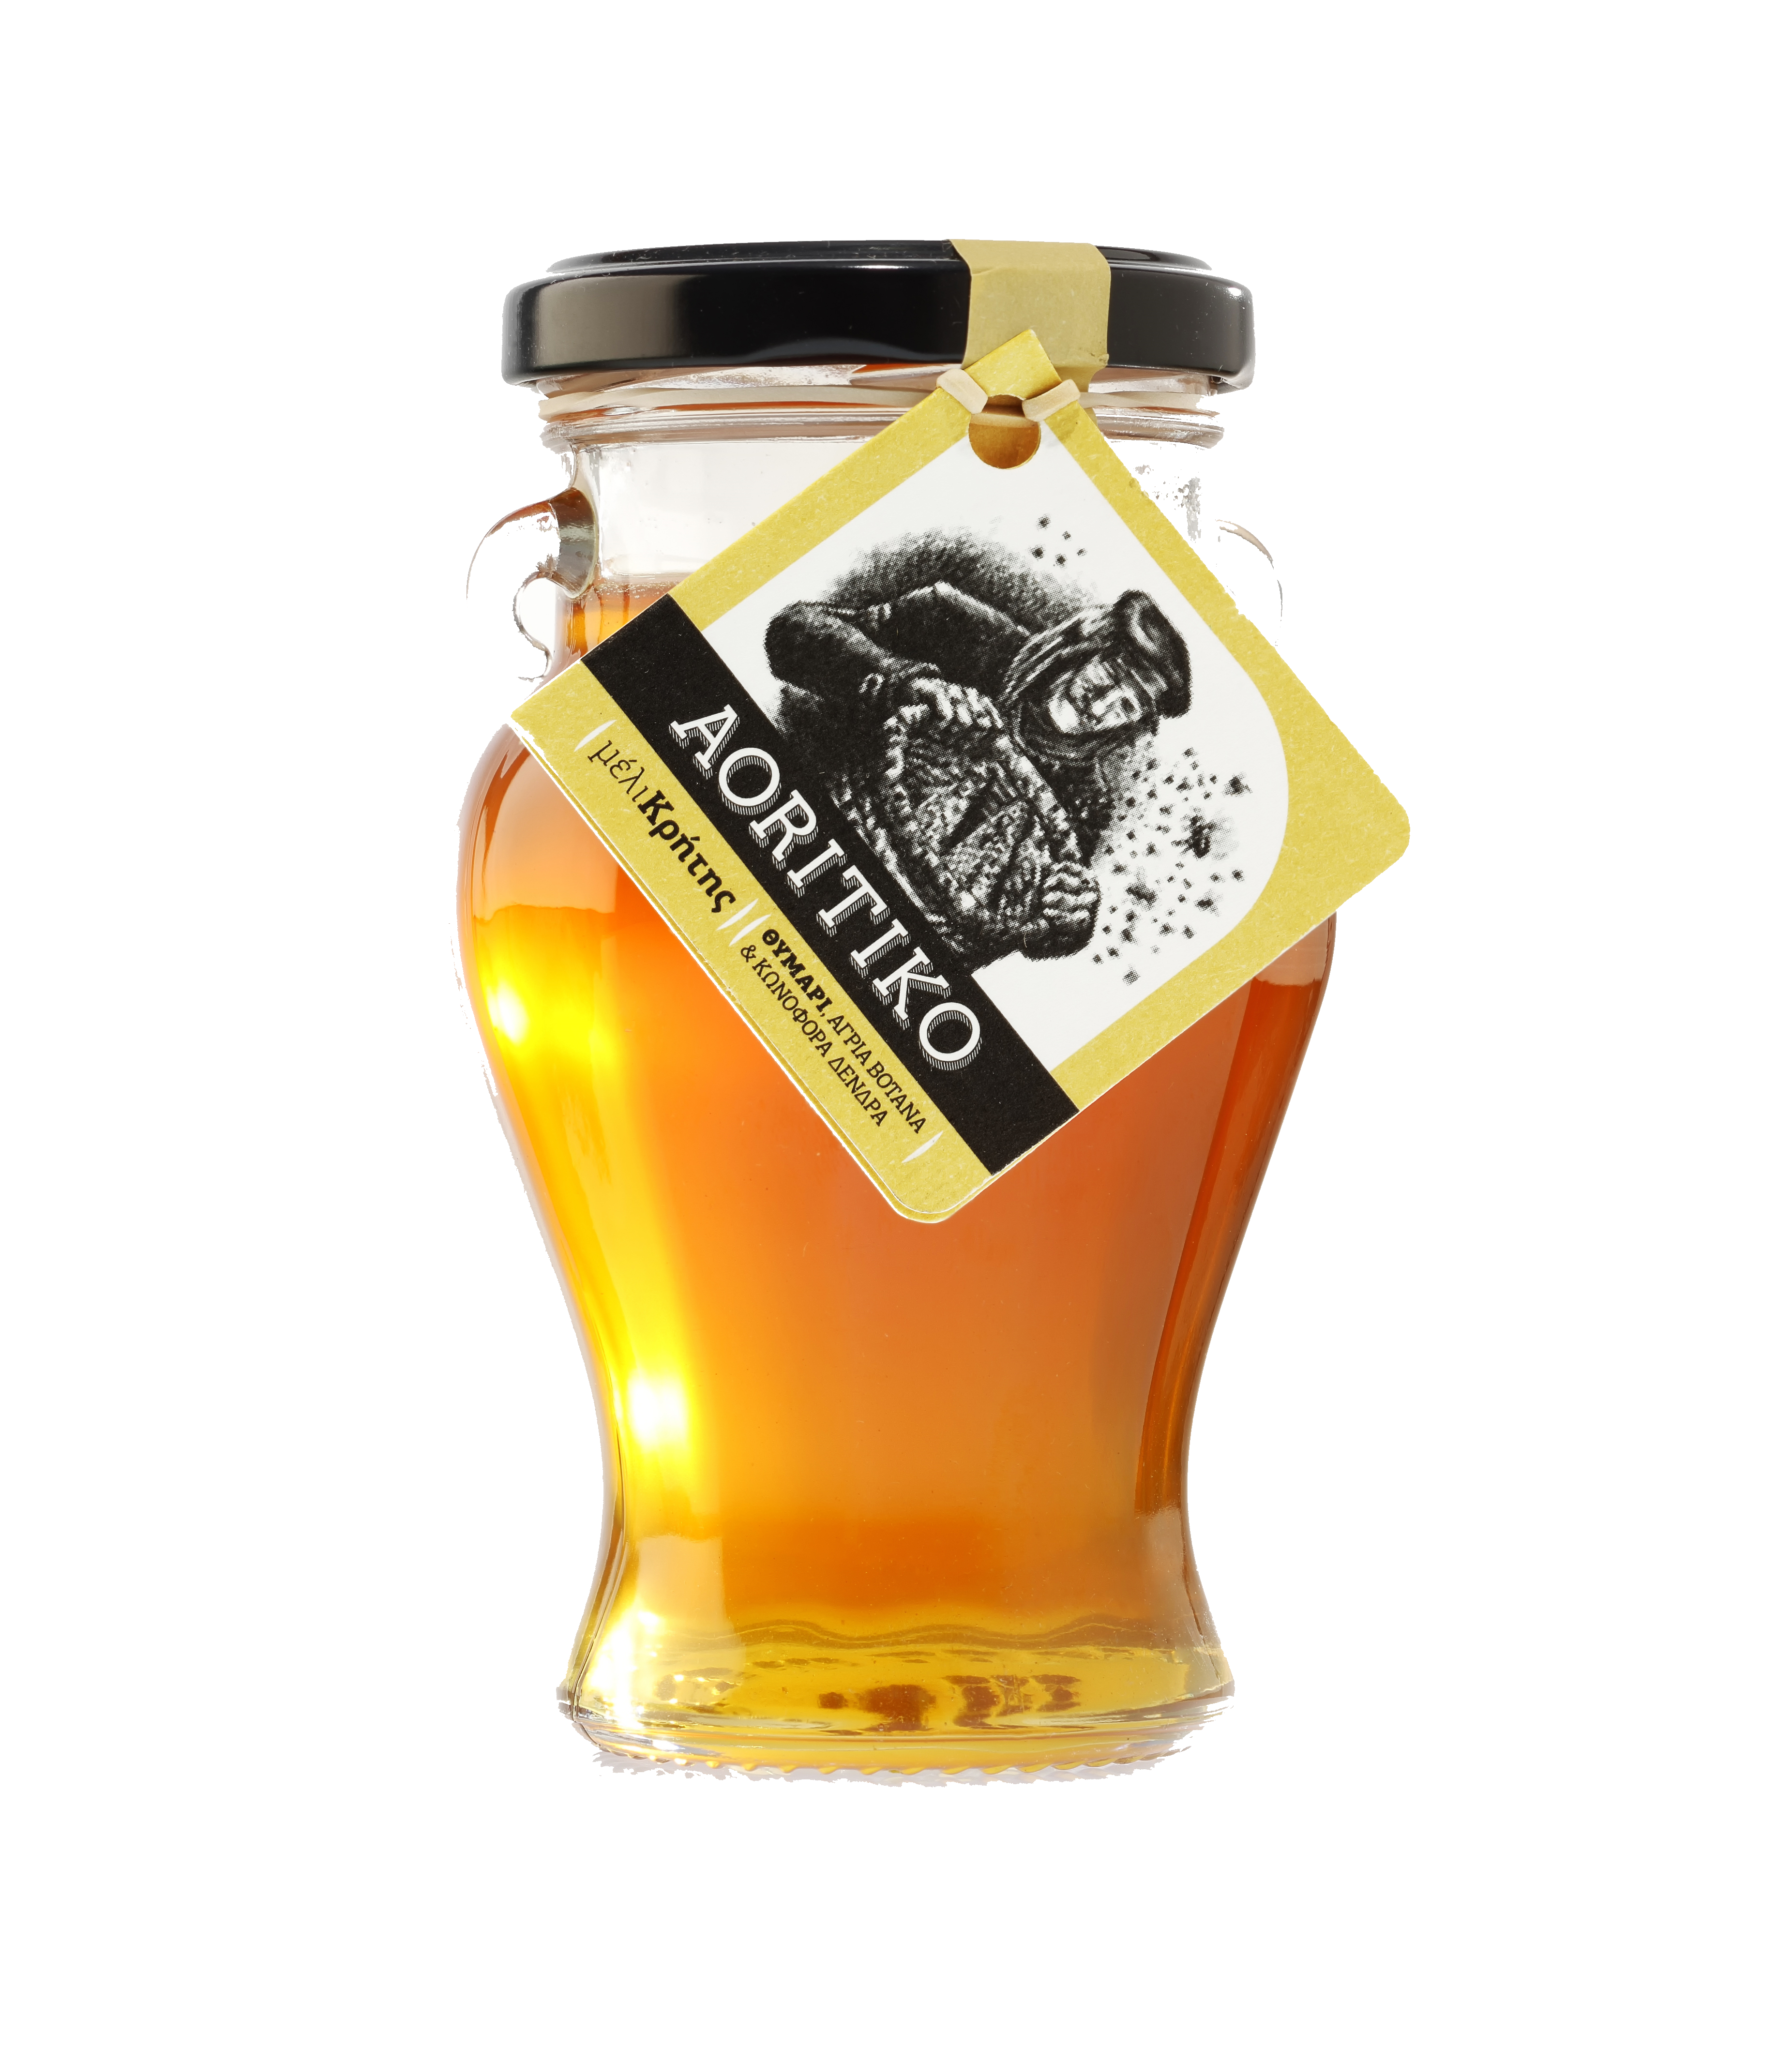 Aoritiko Thyme, Pine Tree & Wild Herb Honey - 4.4 oz